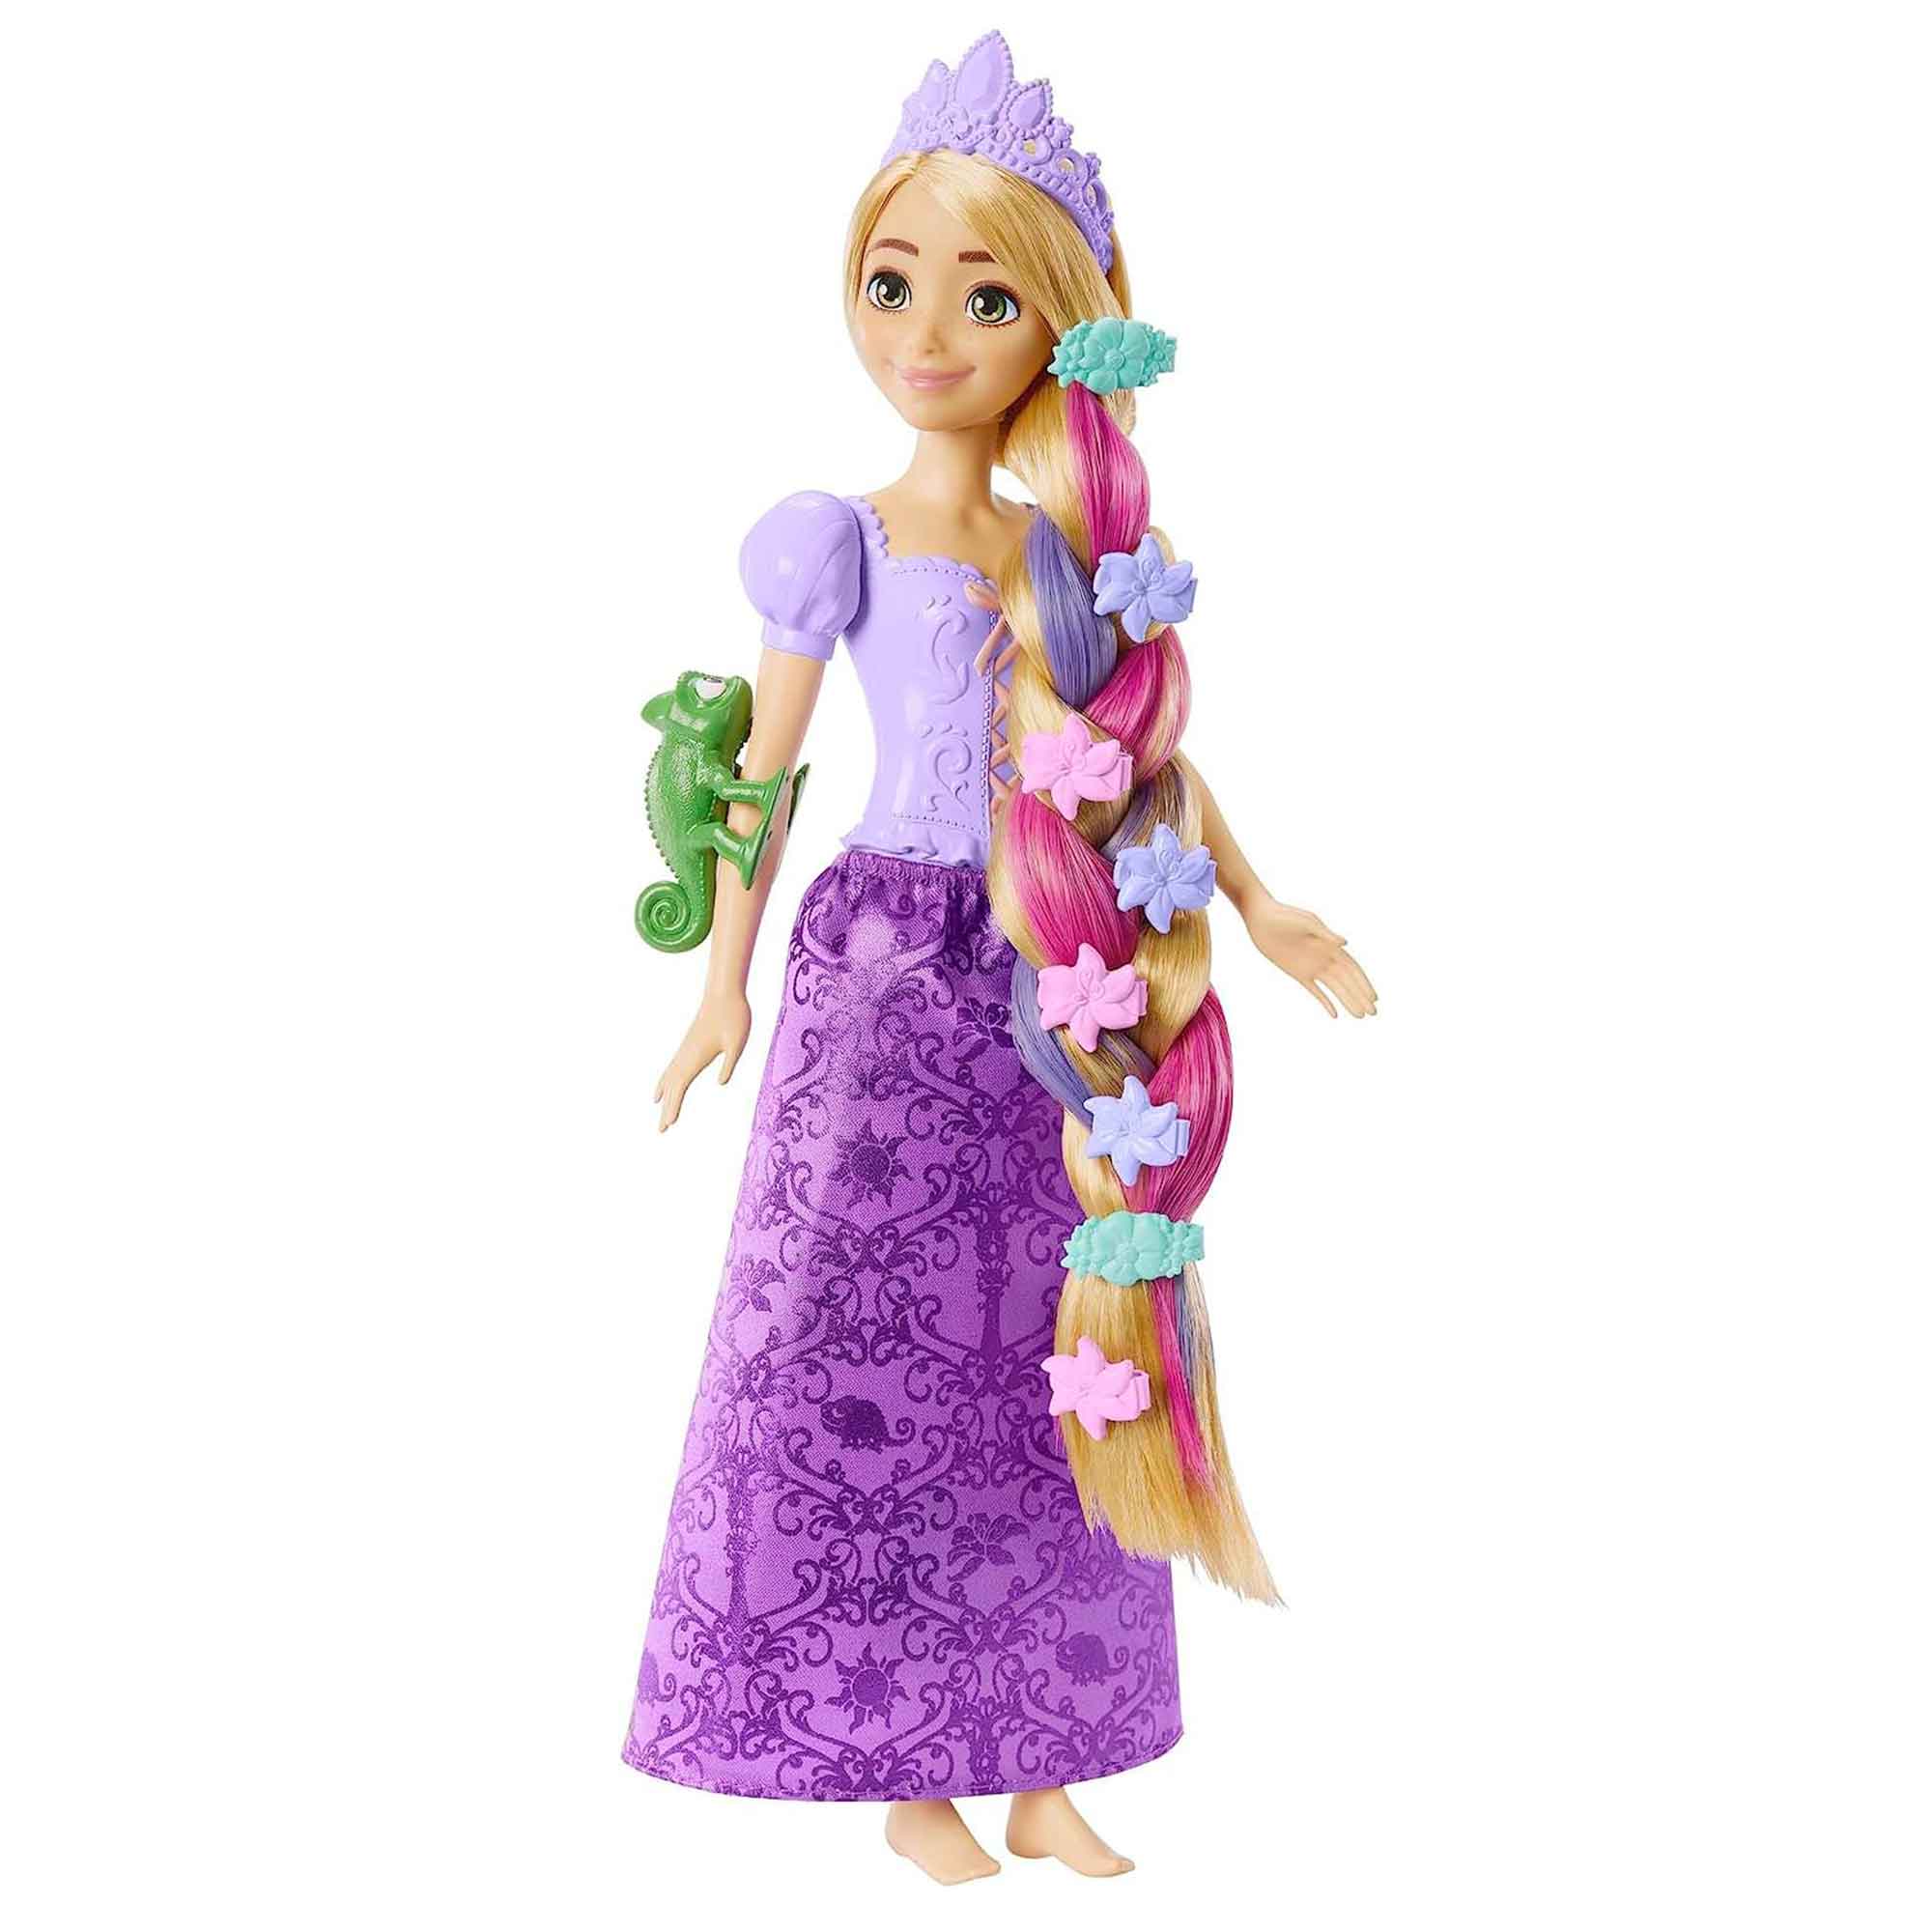 Disney Princess Fairy-Tale Hair Rapunzel Fashion Doll & Accessories